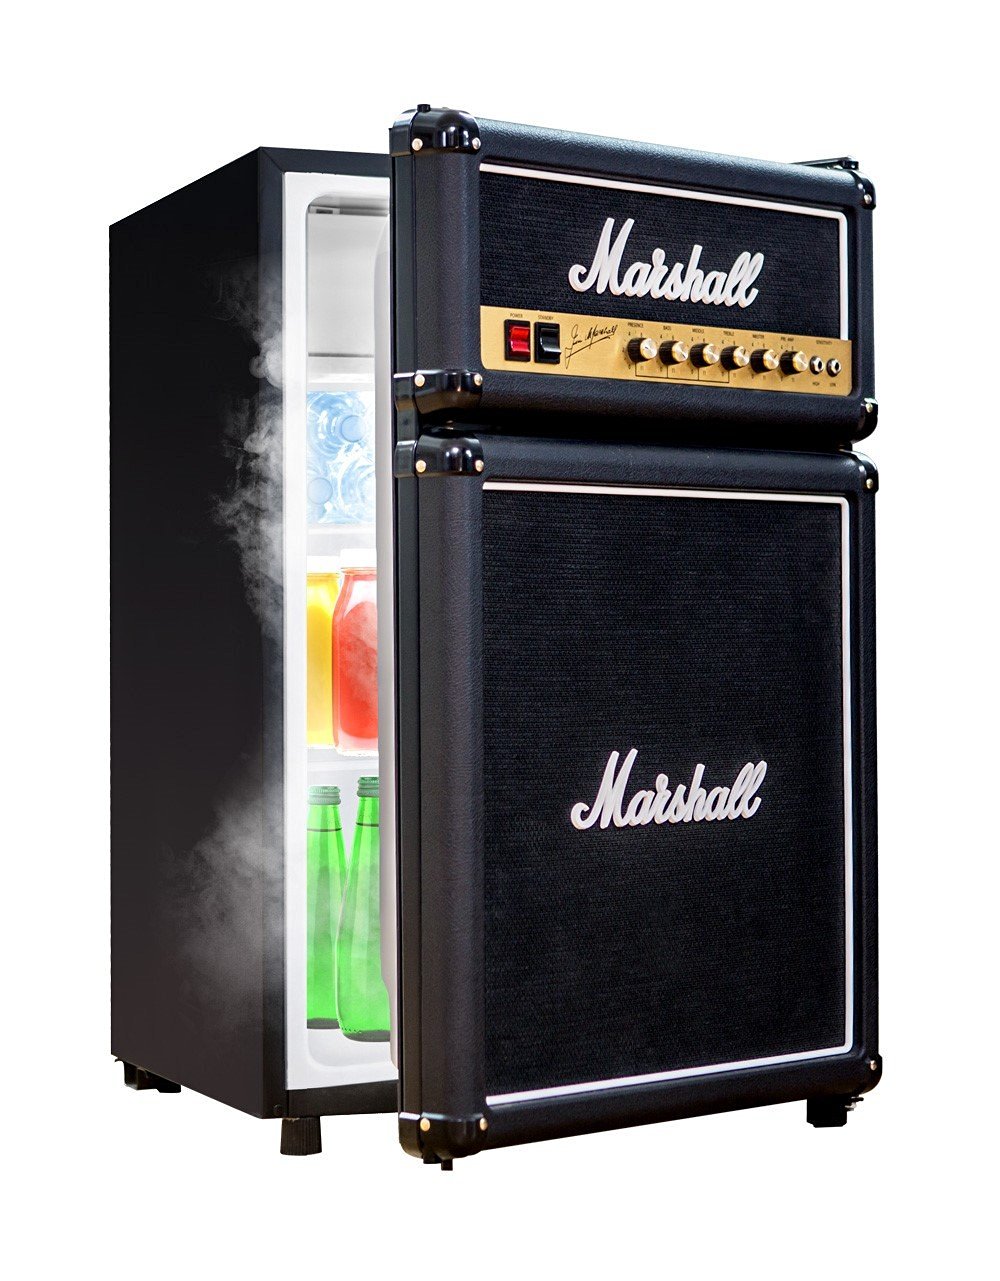 Marshall fridge